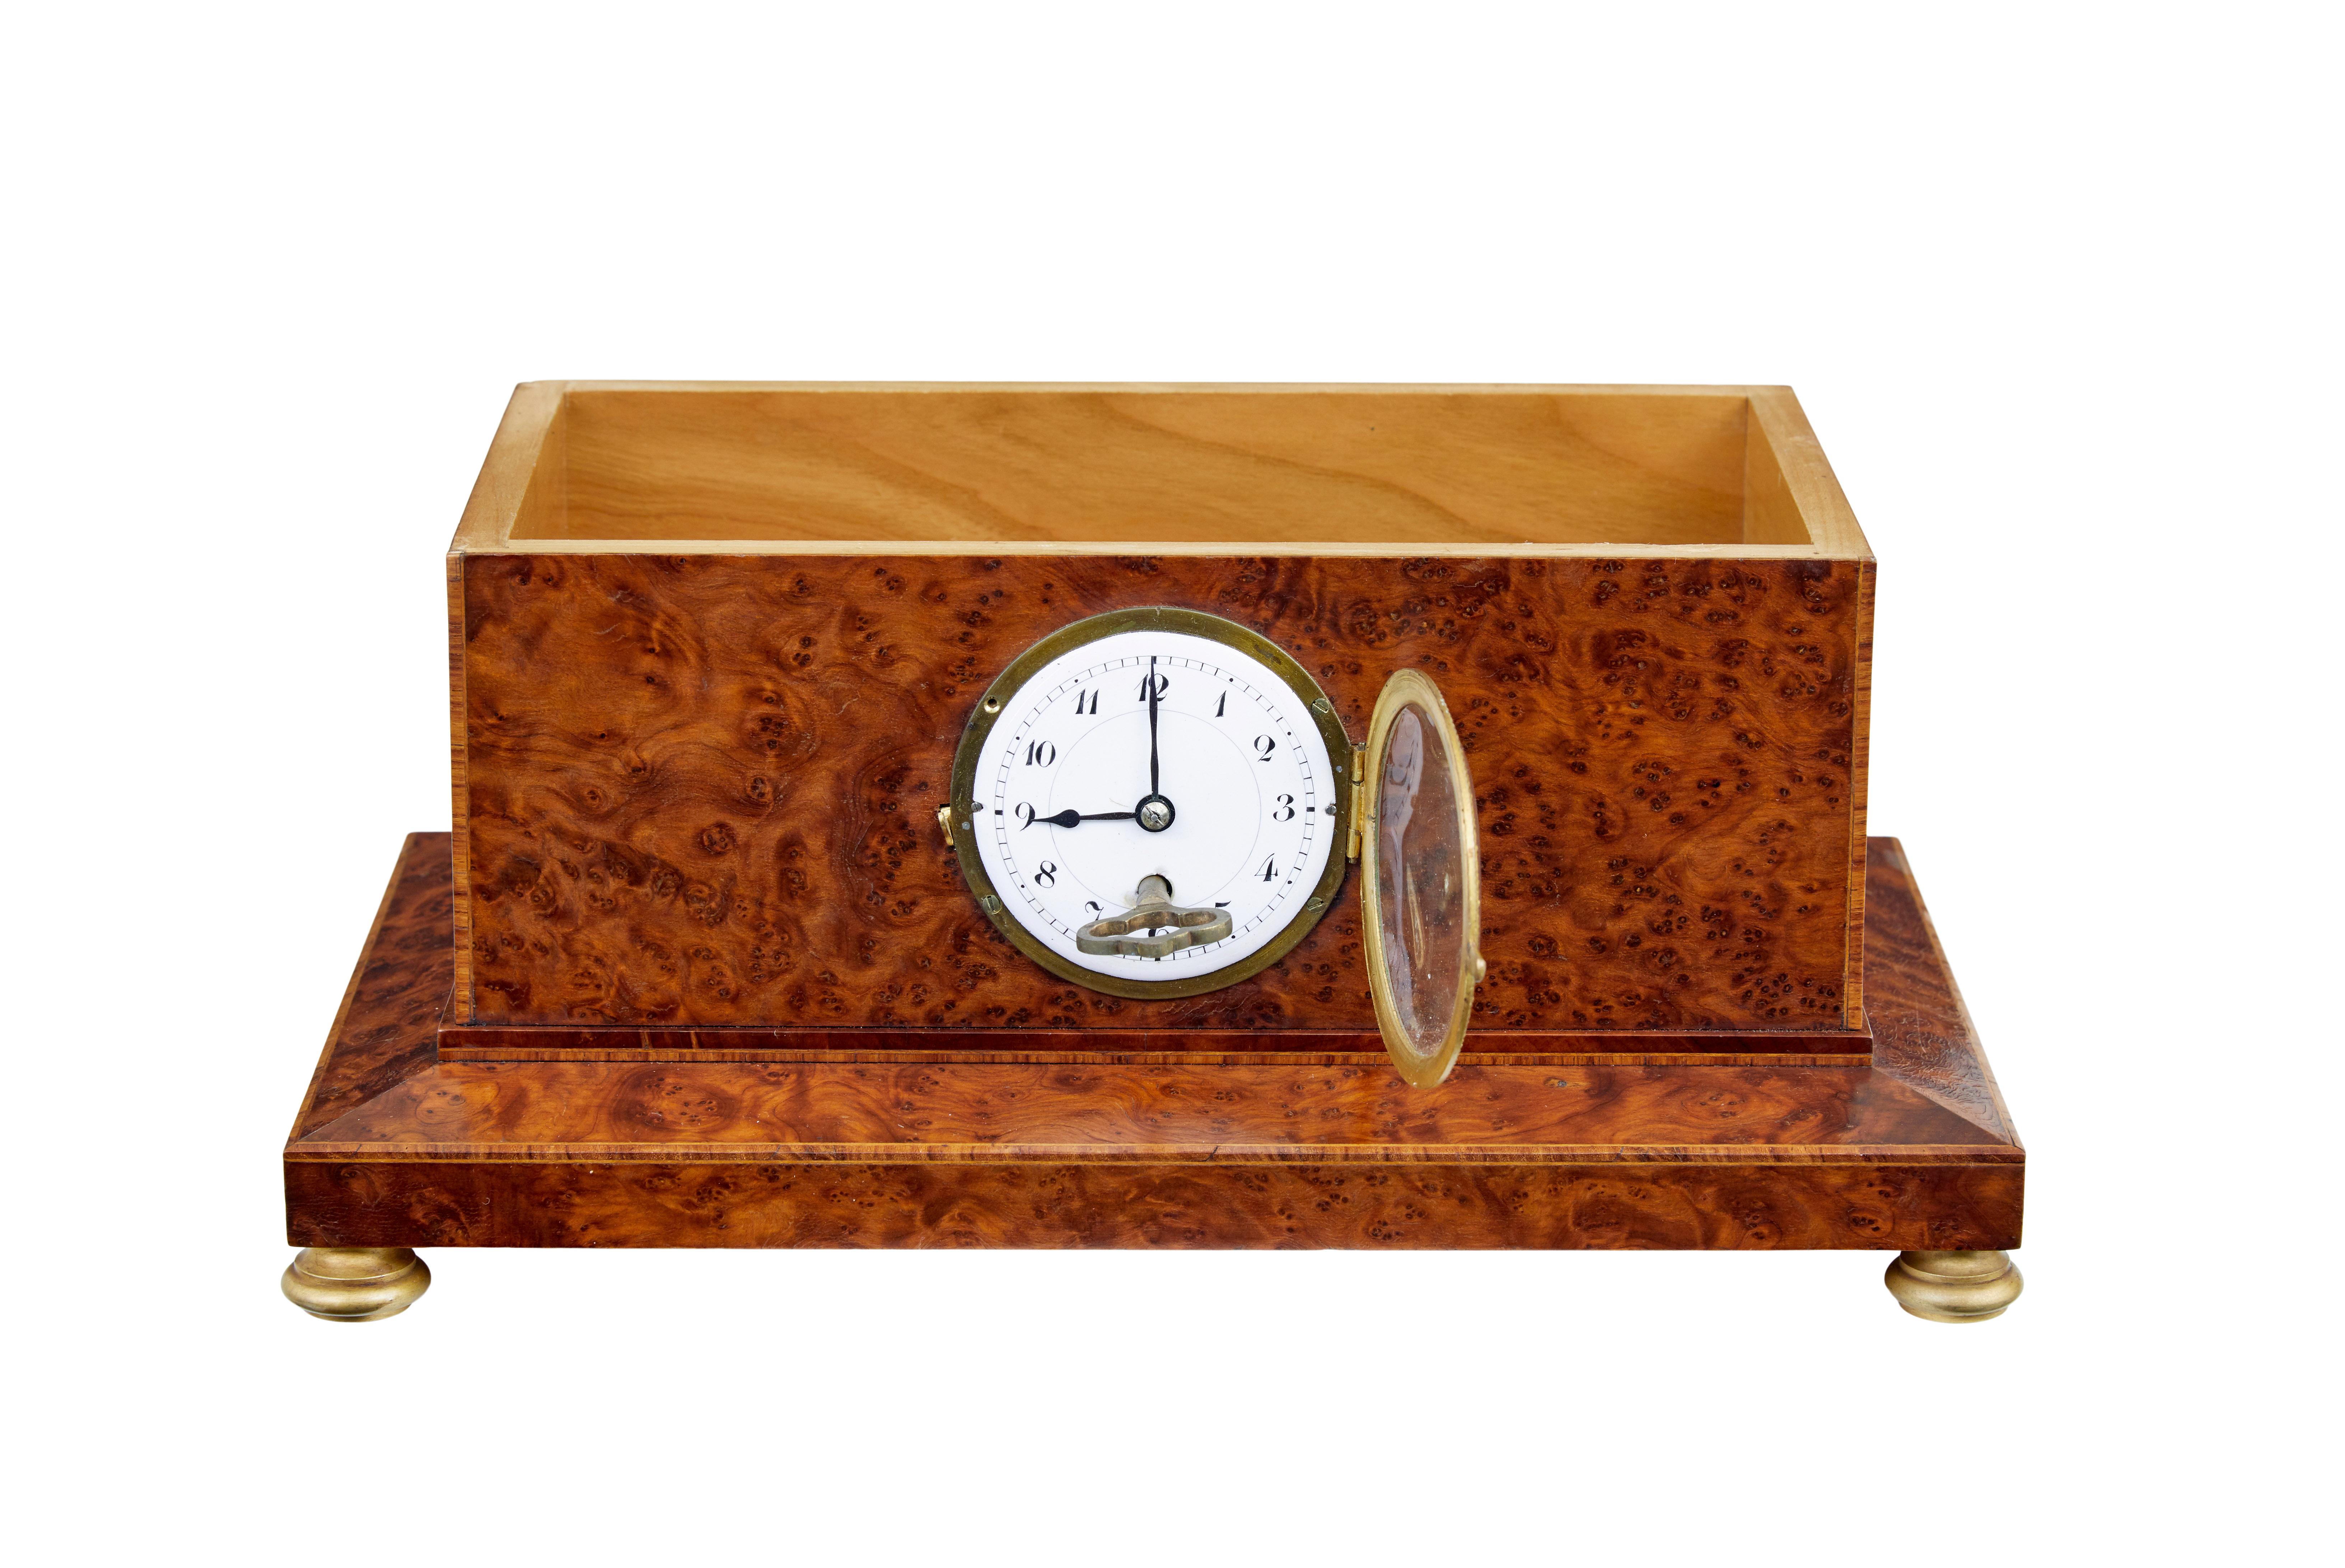 Boîte de bureau en loupe d'if du début du 20e siècle avec horloge vers 1920.

Boîte à cigares en loupe d'if de style Empire avec horloge.  Le couvercle est orné d'une monture en bronze doré et repose sur des pieds en bronze doré.  Cadran d'horloge